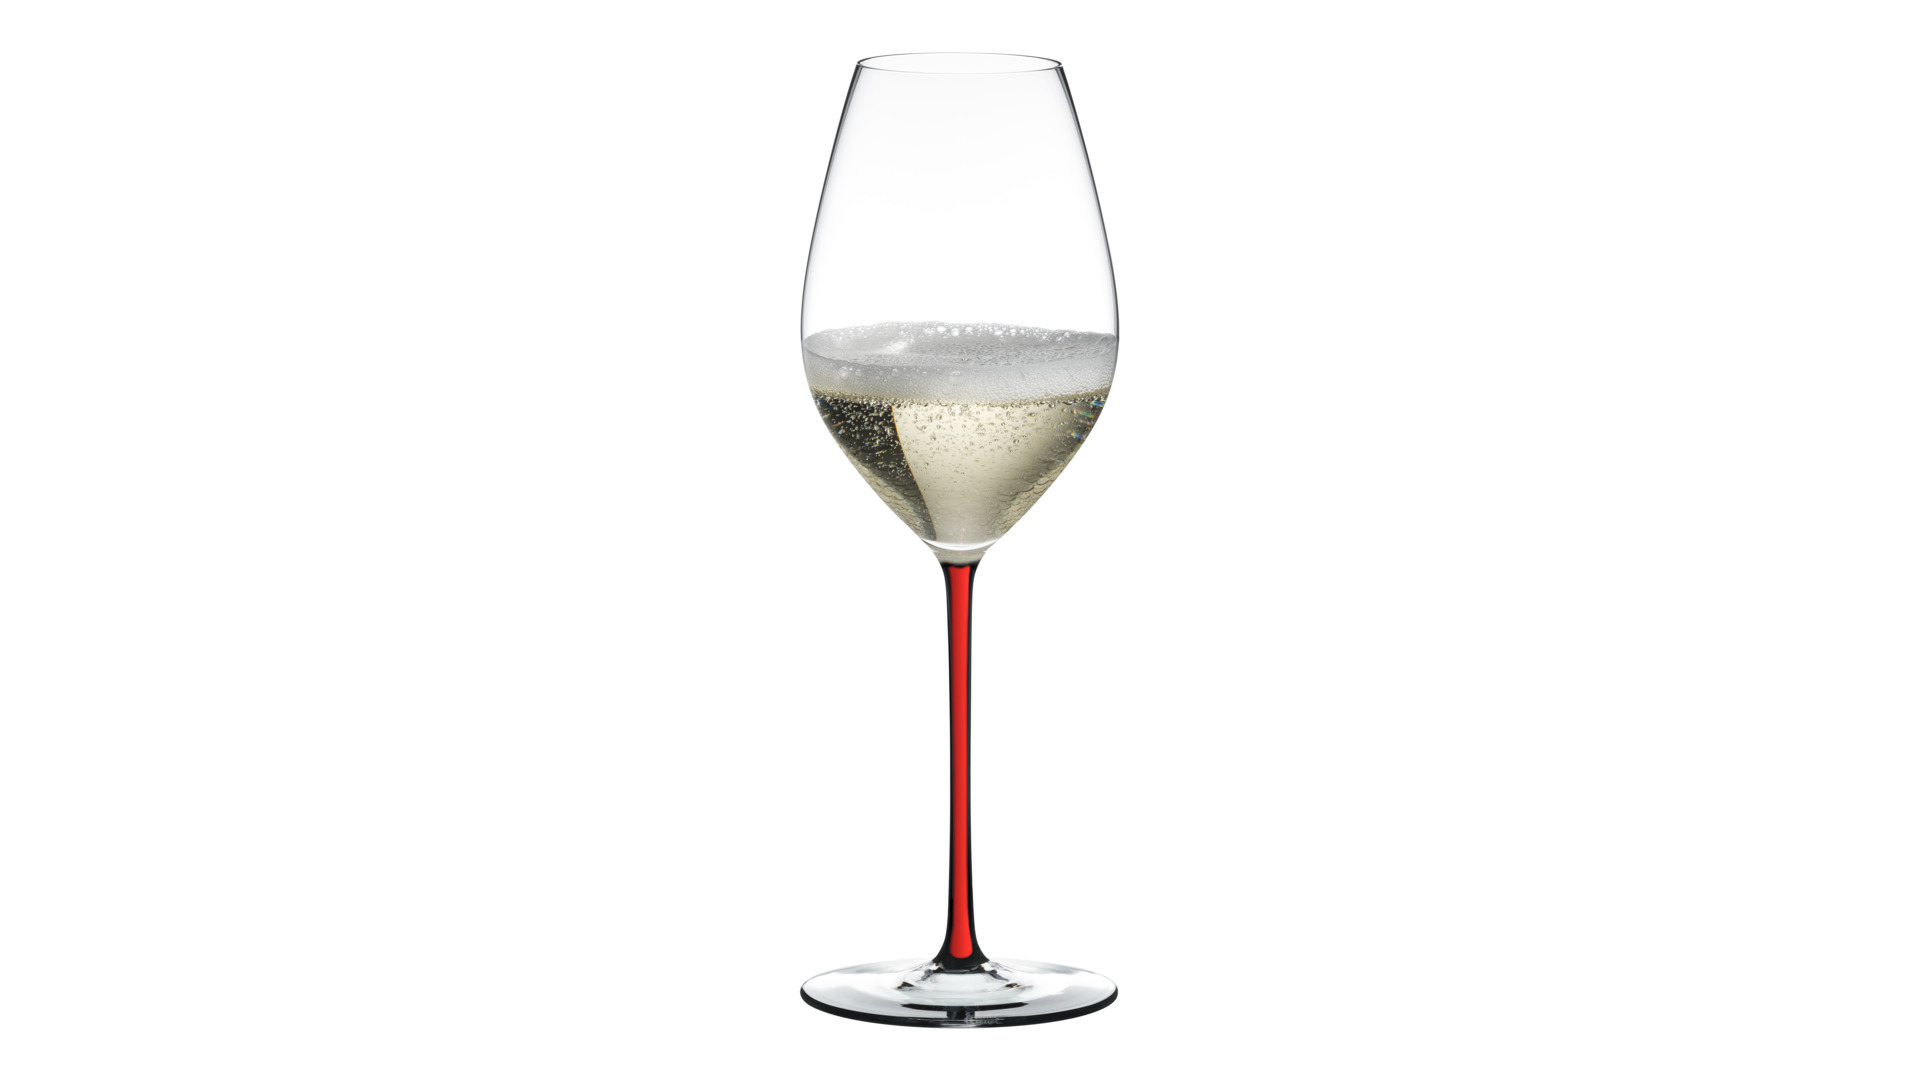 Бокал для шампанского Riedel Fatto a Mano Champagne 445 мл, красная ножка, ручная работа, хрусталь